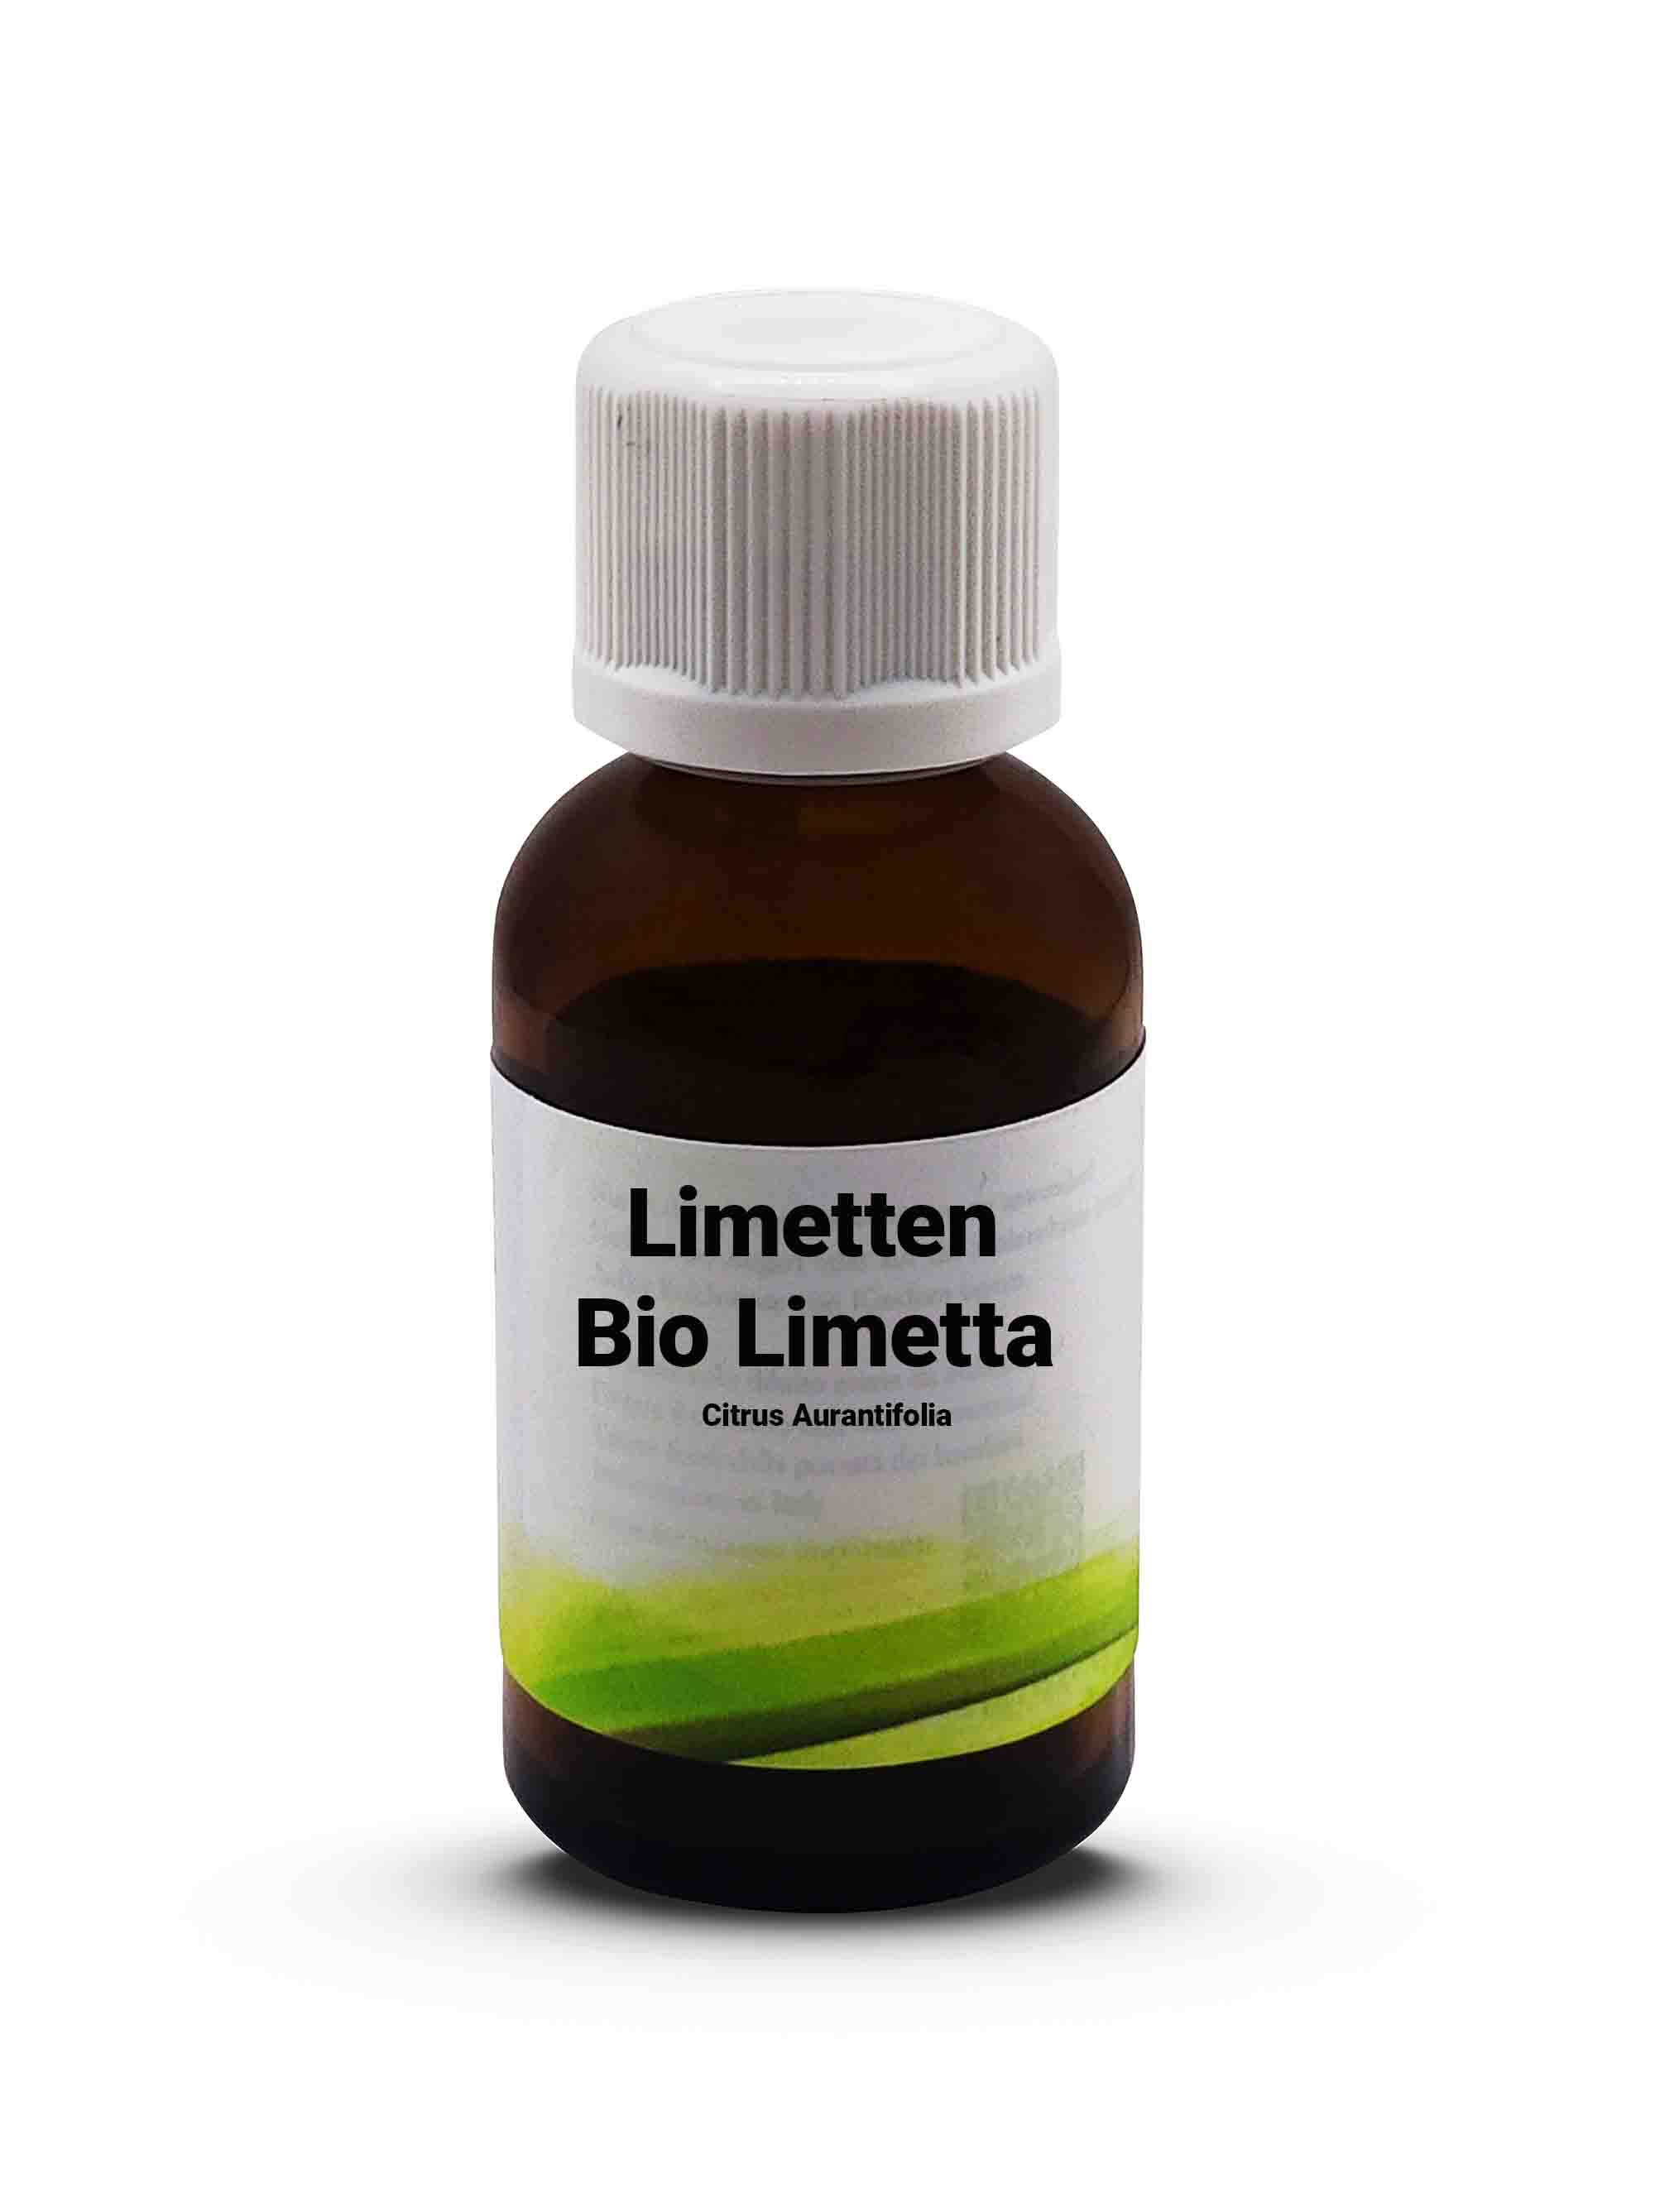 Bio Limetta - Citrus Aurantifolia